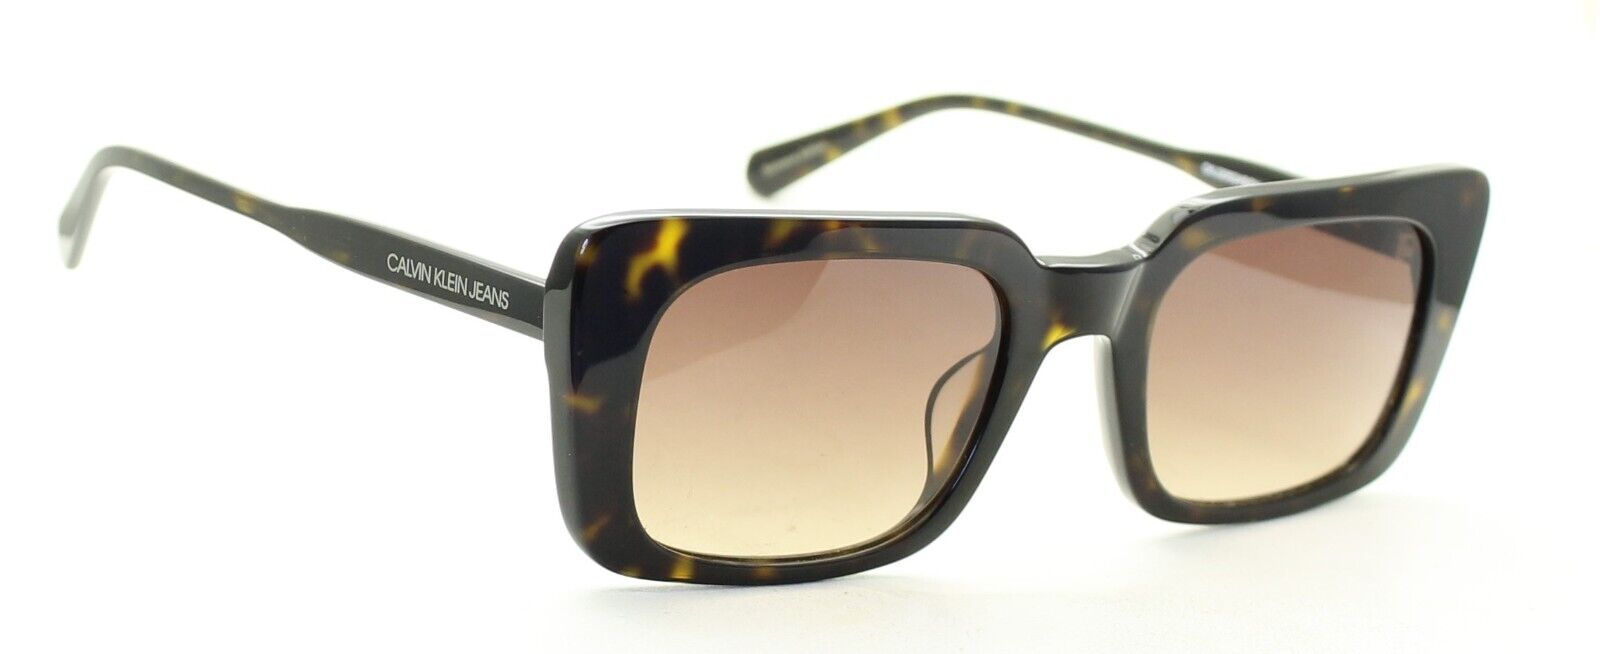 CALVIN KLEIN JEANS CKJ20524SGV 235 52mm Sunglasses Shades Frames New - BNIB